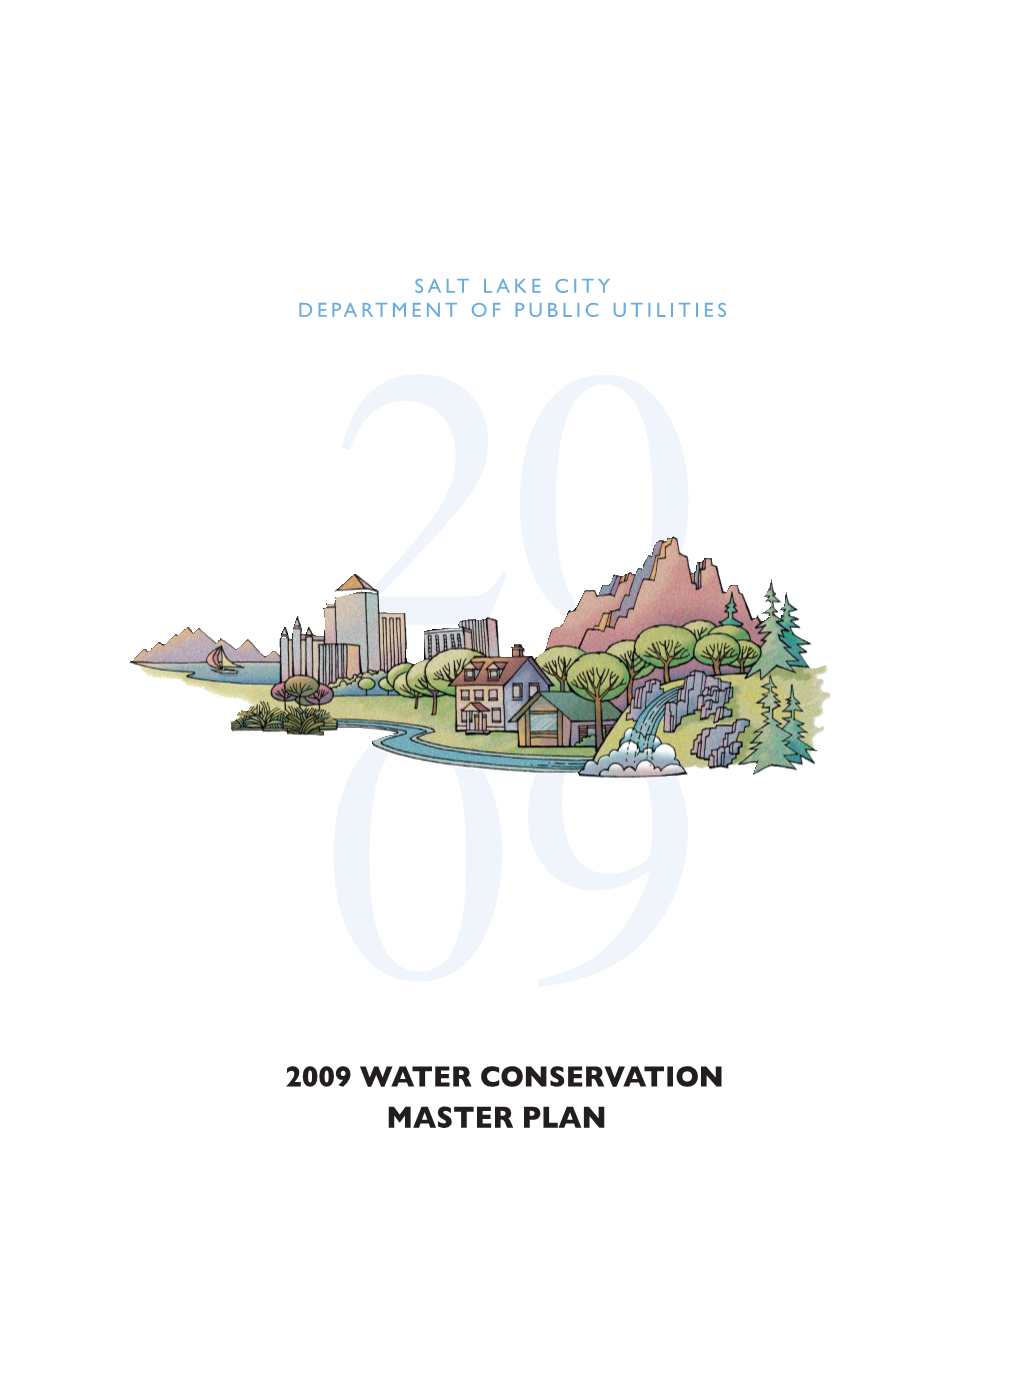 Master Plan 2009 Water Conservation Master Plan